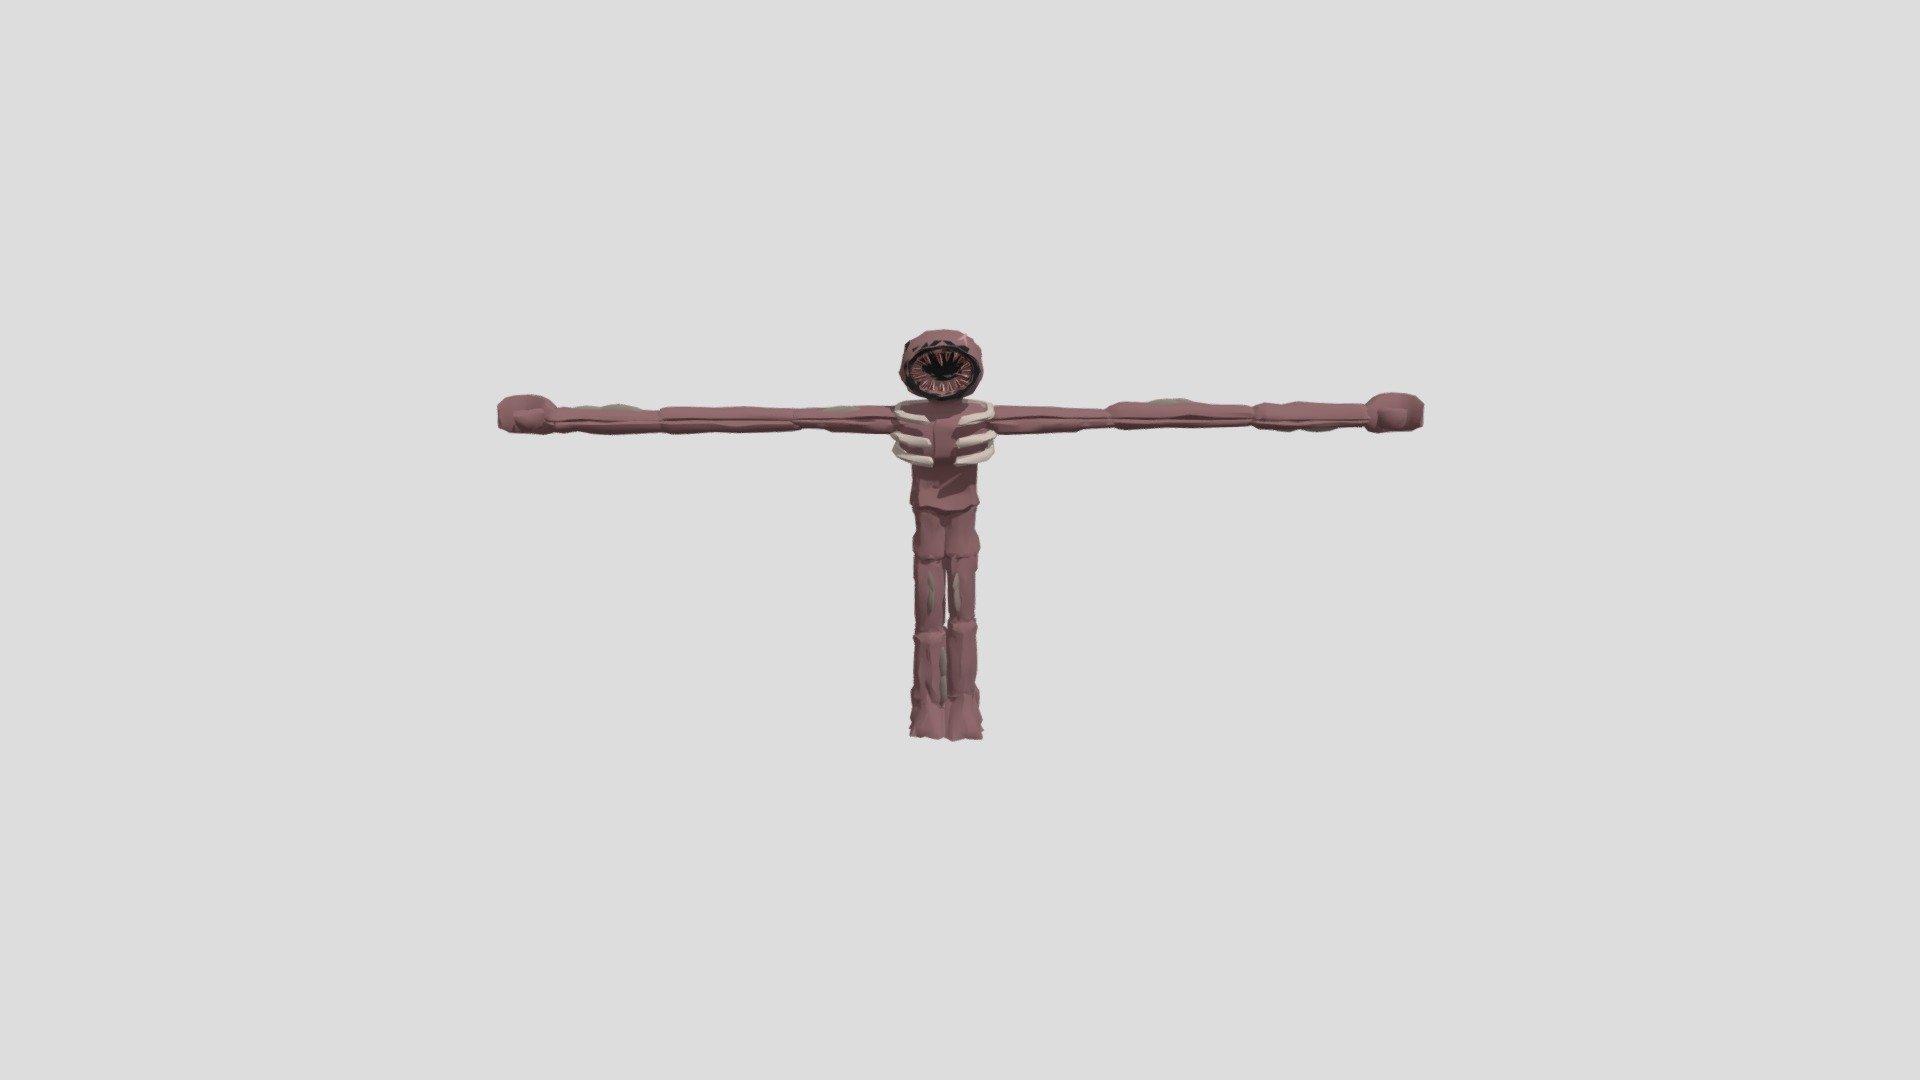 crucifix at door 11! : r/doors_roblox